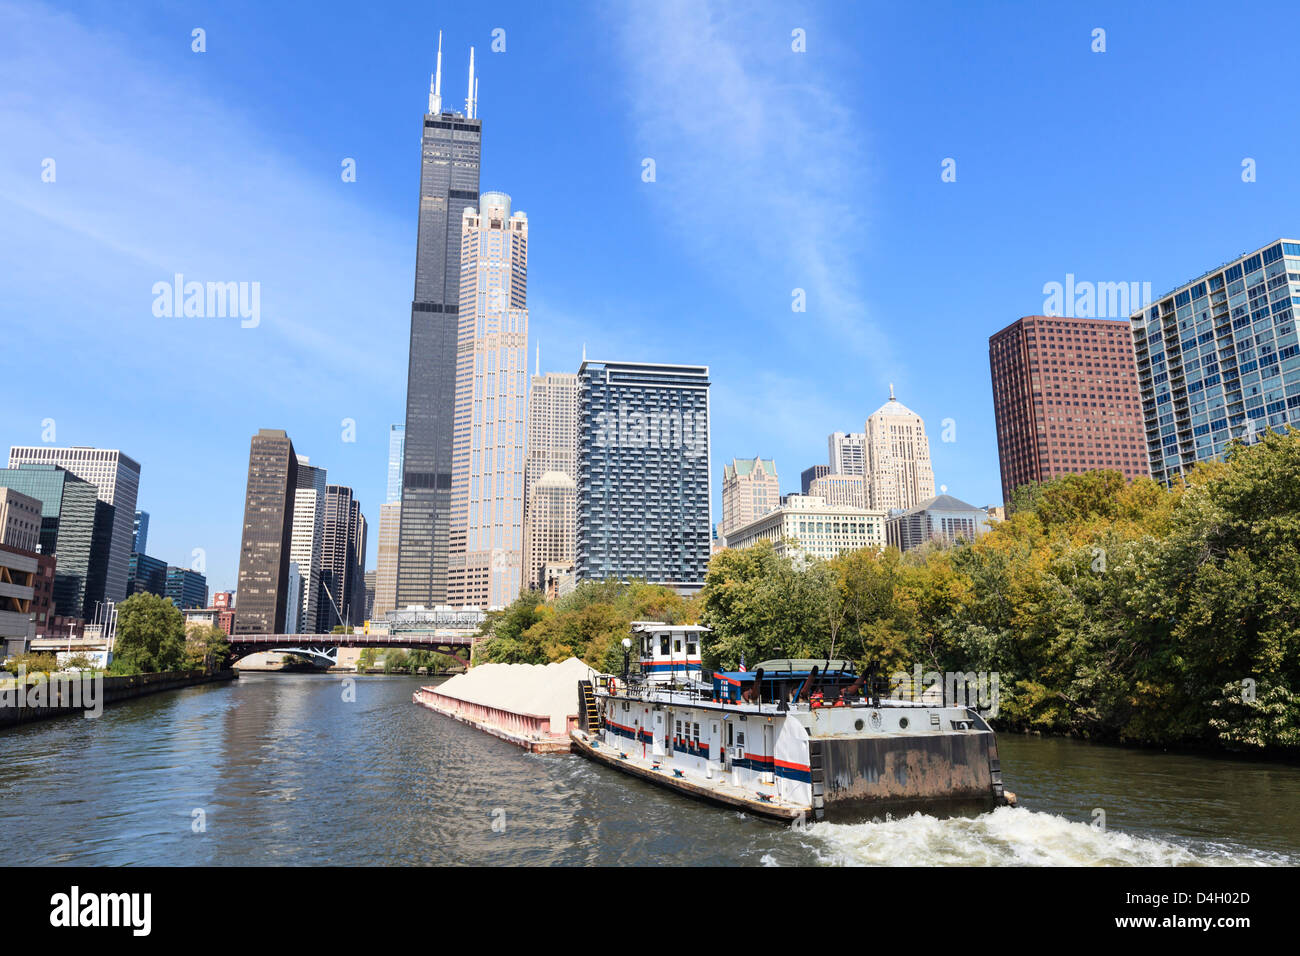 Traffico fluviale sul ramo meridionale del fiume Chicago, Willis torre domina lo skyline di Chicago, Illinois, Stati Uniti d'America Foto Stock